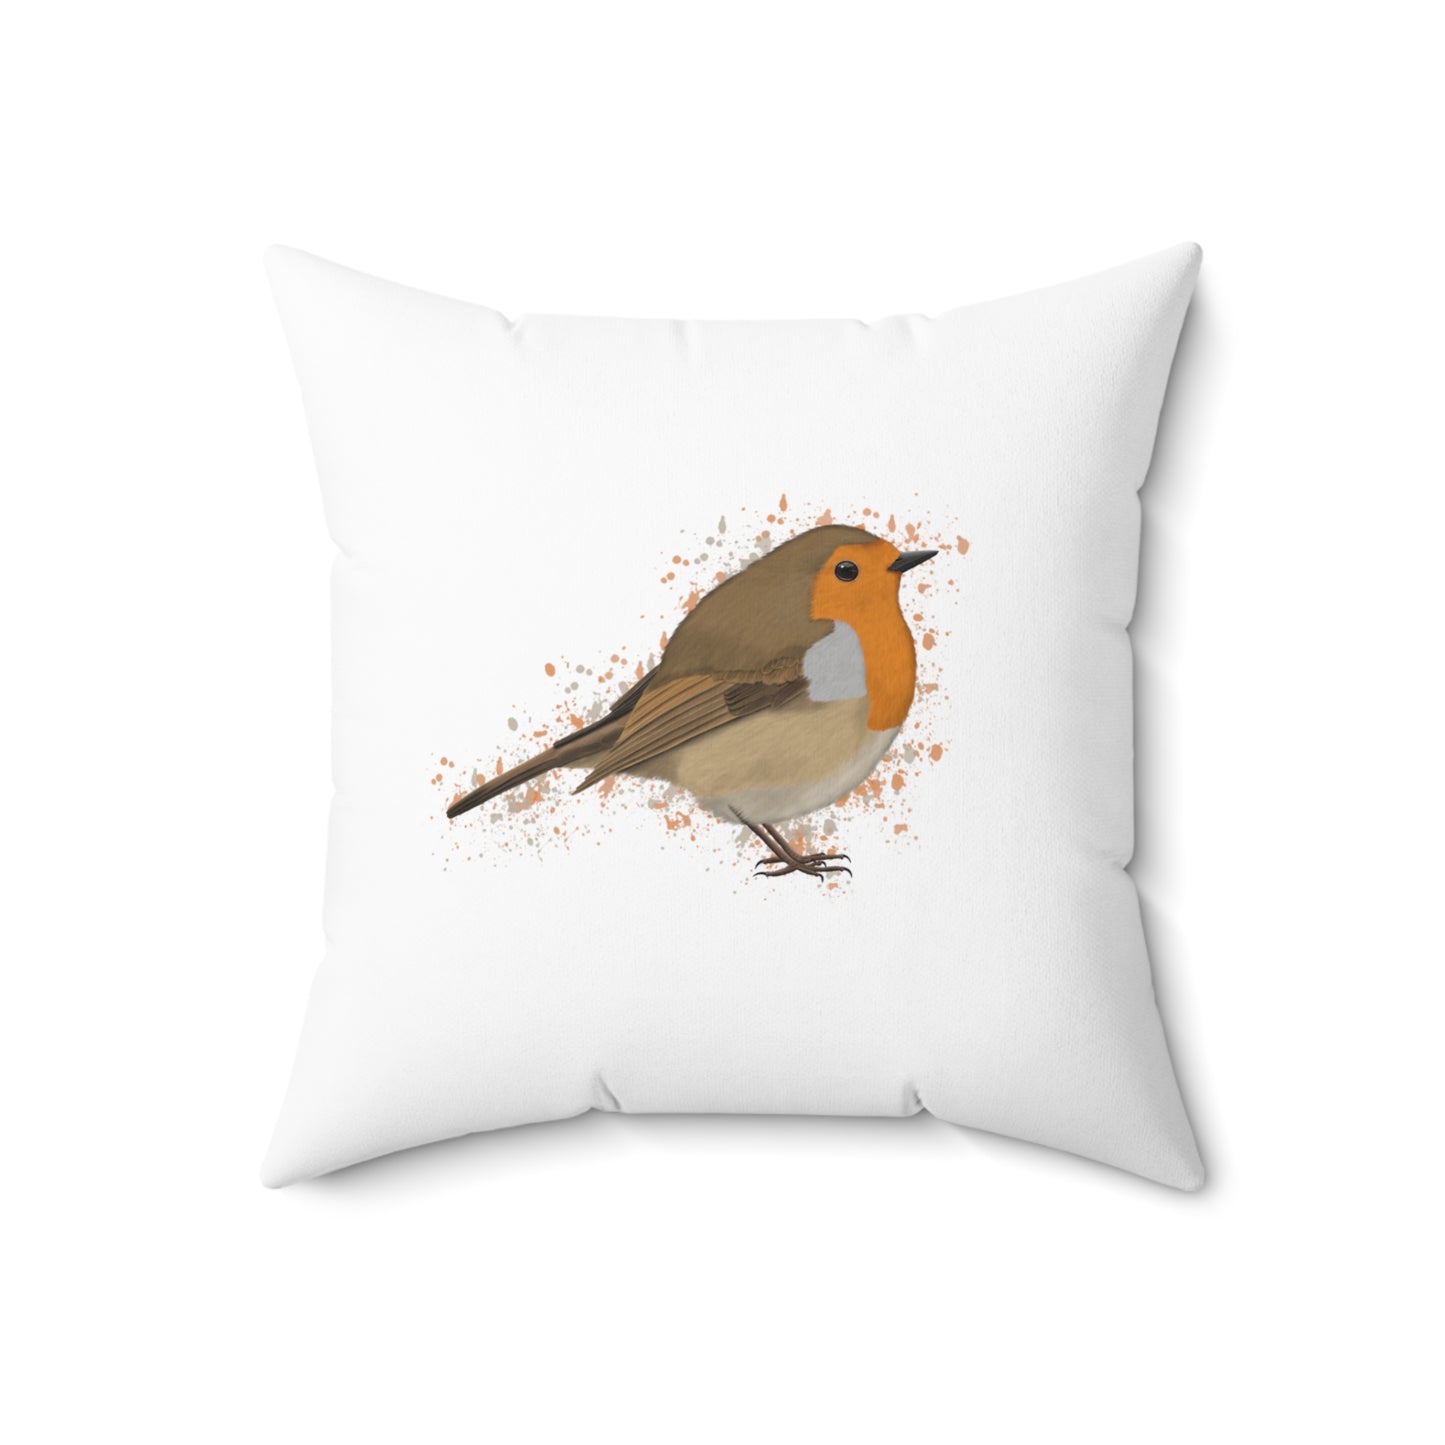 Robin Bird Throw Pillow 18"x18" White